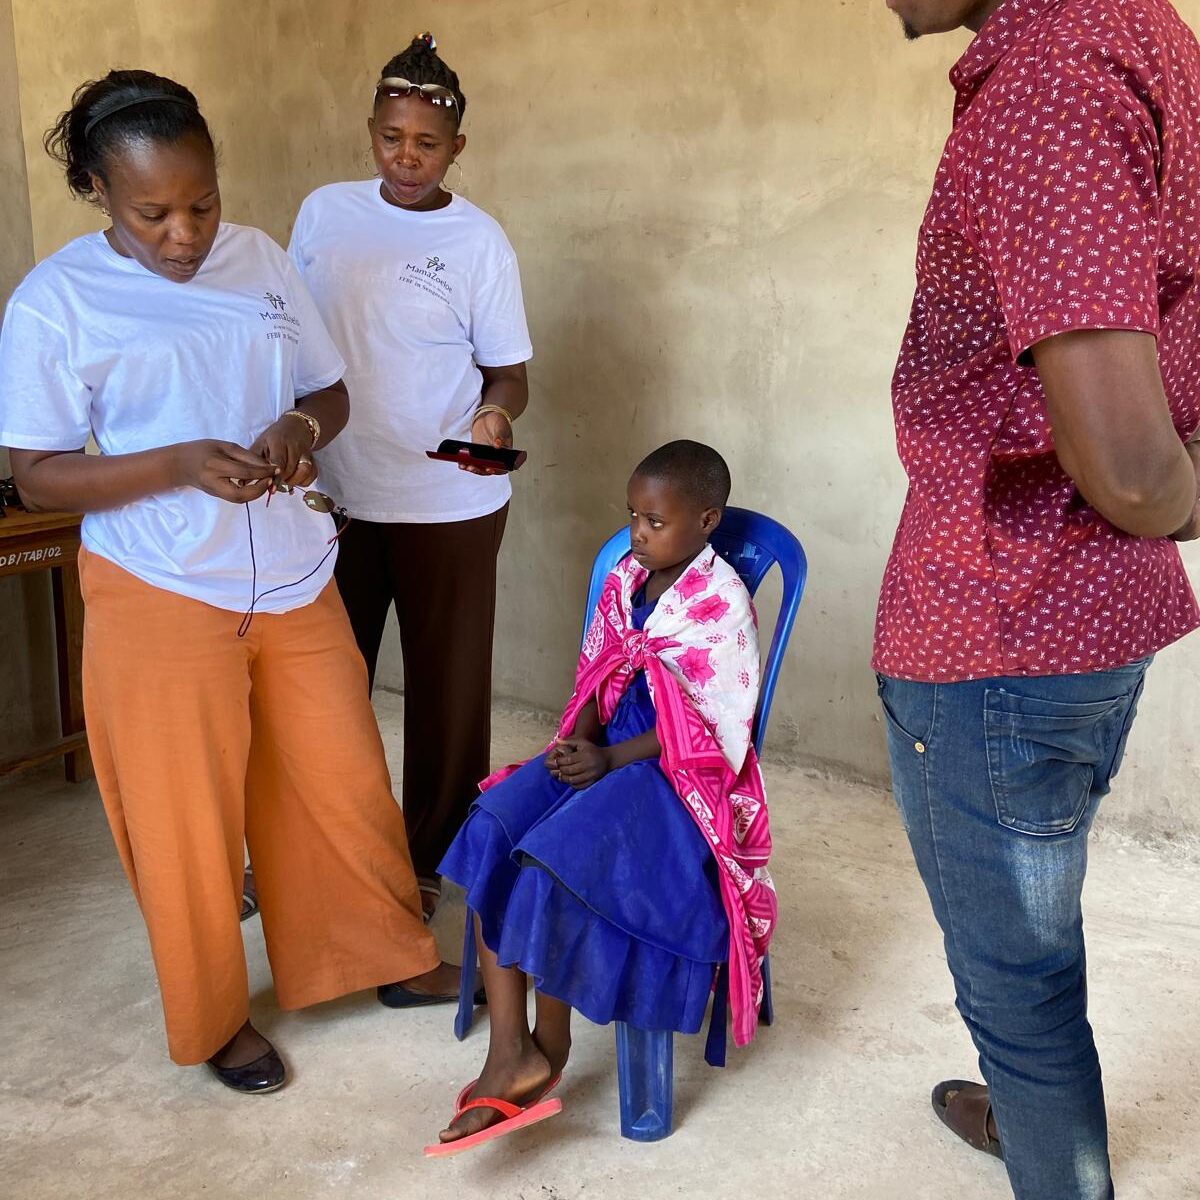 Tanzaniaans meisje dat bril krijgt tijdens project van stichting mamazoeloe